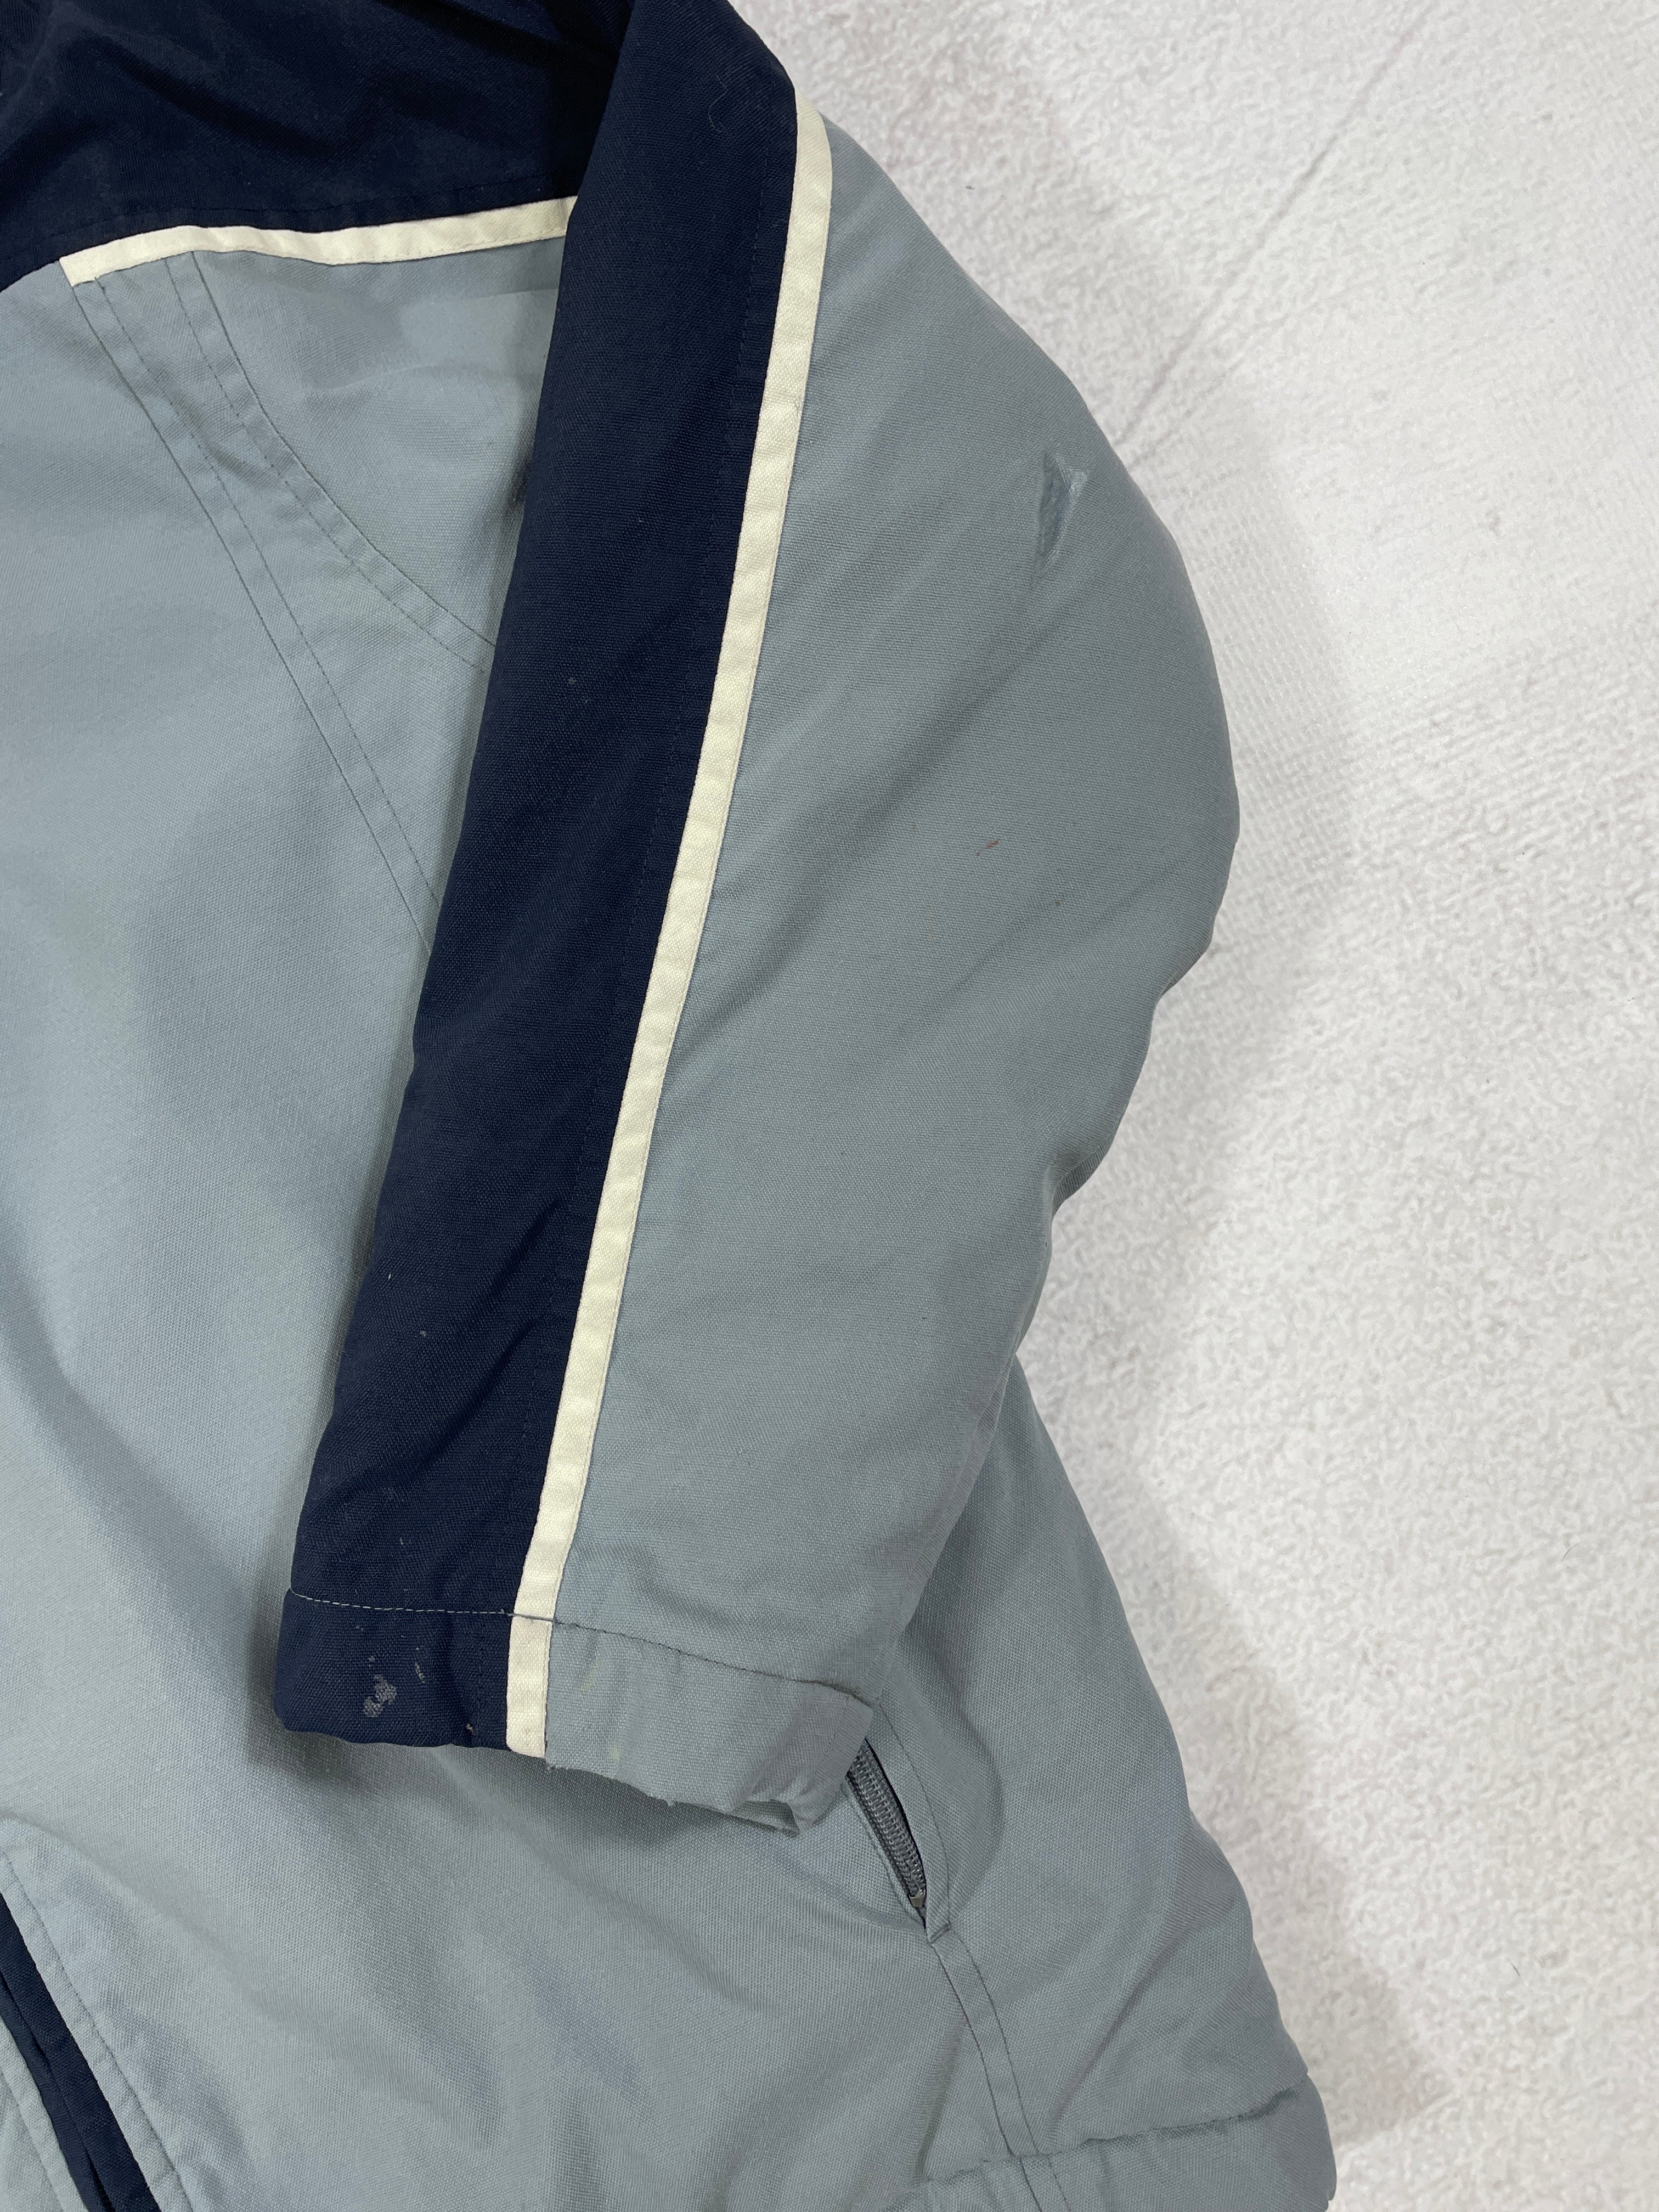 Vintage Kappa Insulated Jacket - Men's Medium